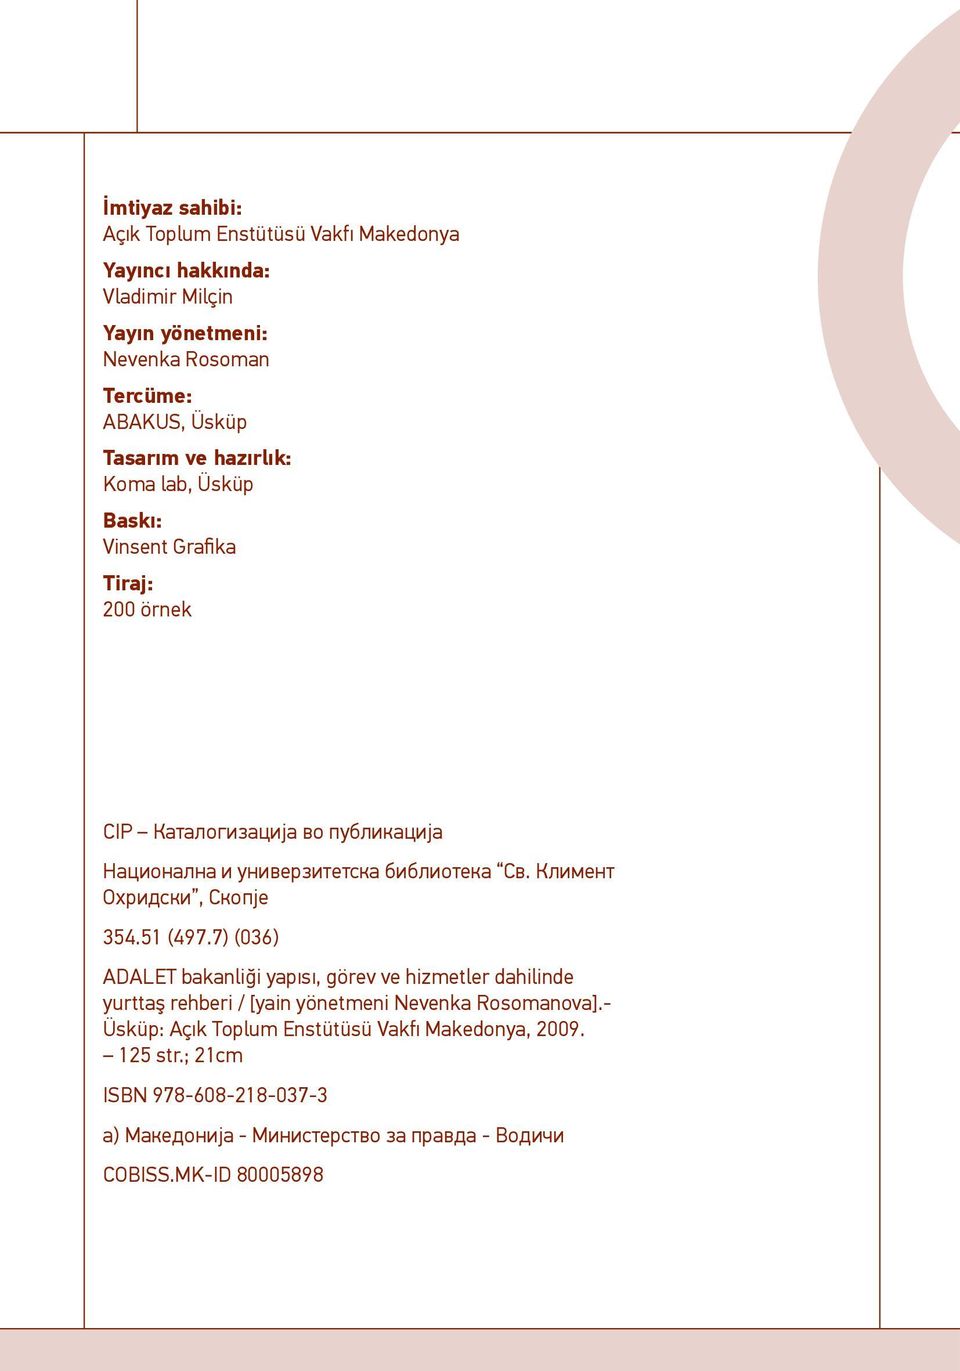 Климент Охридски, Скопје 354.51 (497.7) (036) ADALET bakanliği yapısı, görev ve hizmetler dahilinde yurttaş rehberi / [yain yönetmeni Nevenka Rosomanova].